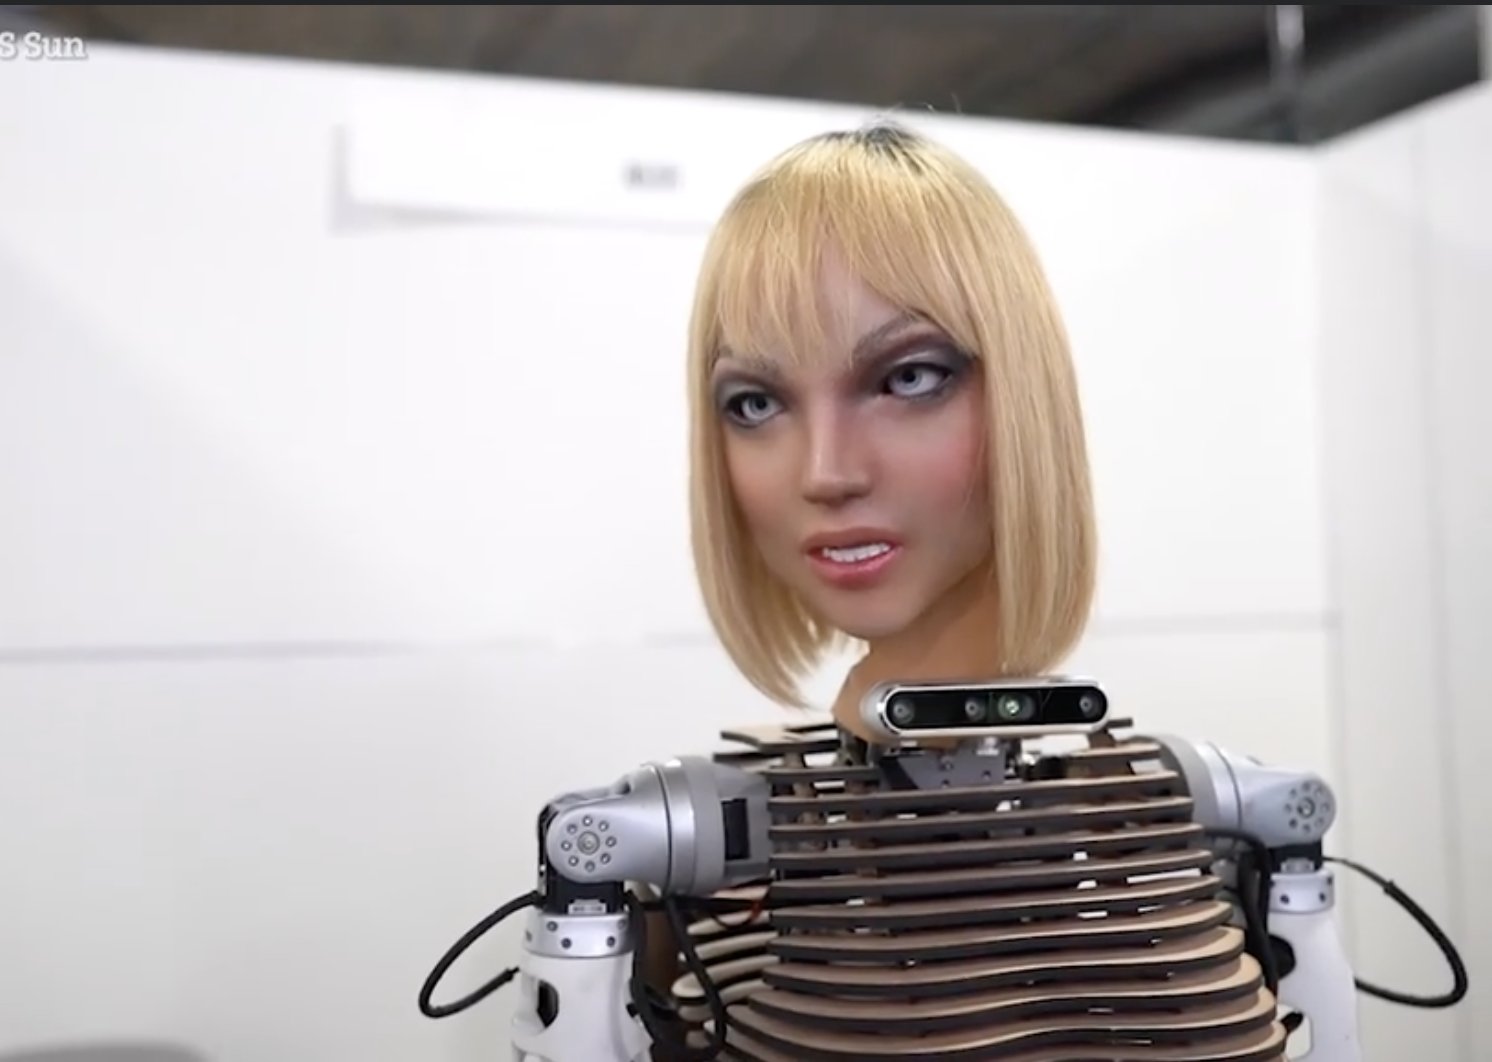 Xoxe an ultra realistic AI robot